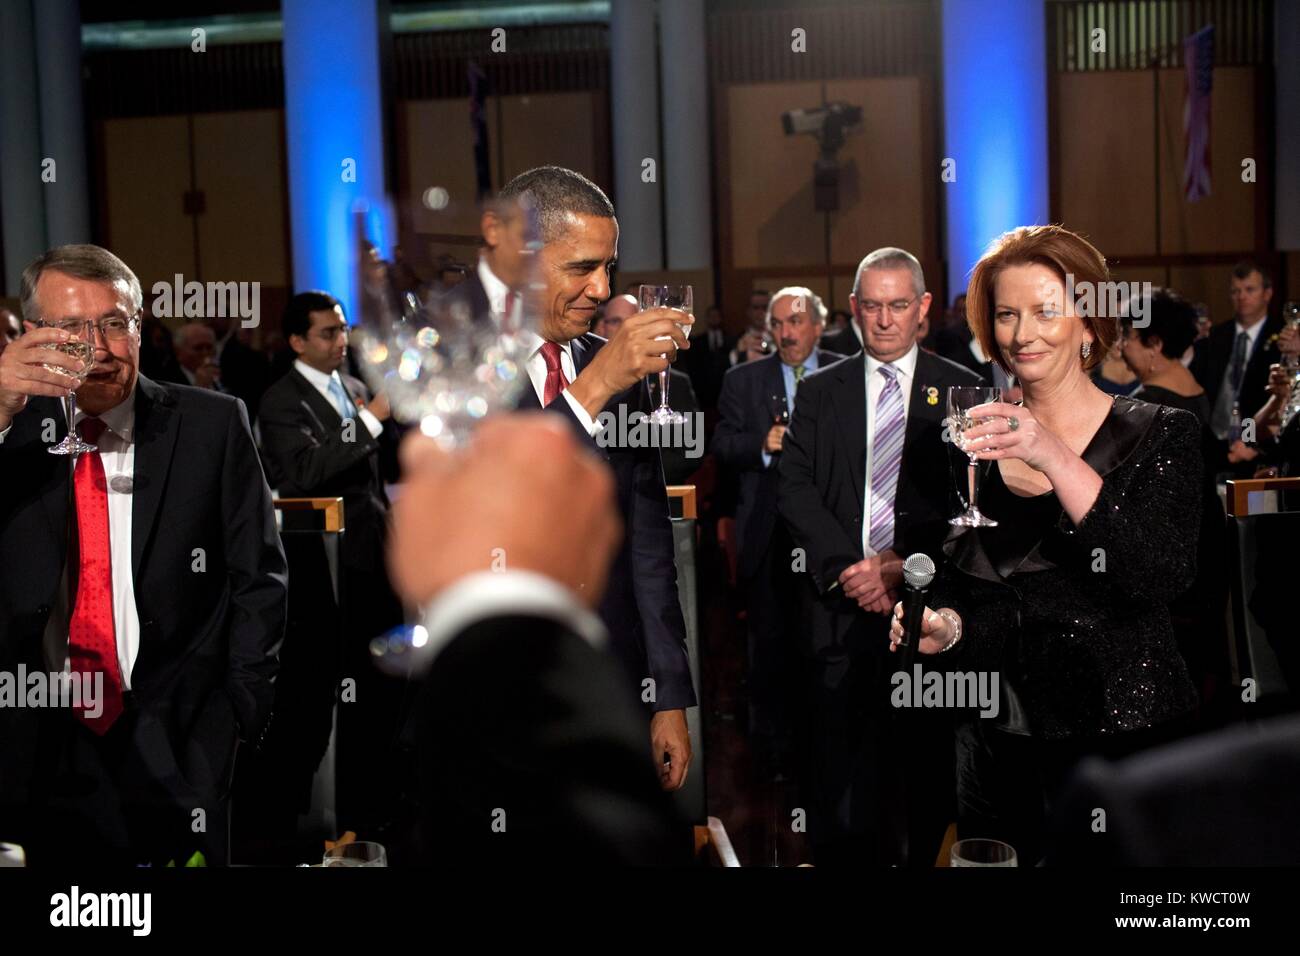 Il primo ministro Julia Gillard propone un brindisi al Presidente Barack Obama. In seno alla cena in casa del Parlamento a Canberra, Australia, nov. 16, 2011. (BSLOC 2015 3 144) Foto Stock